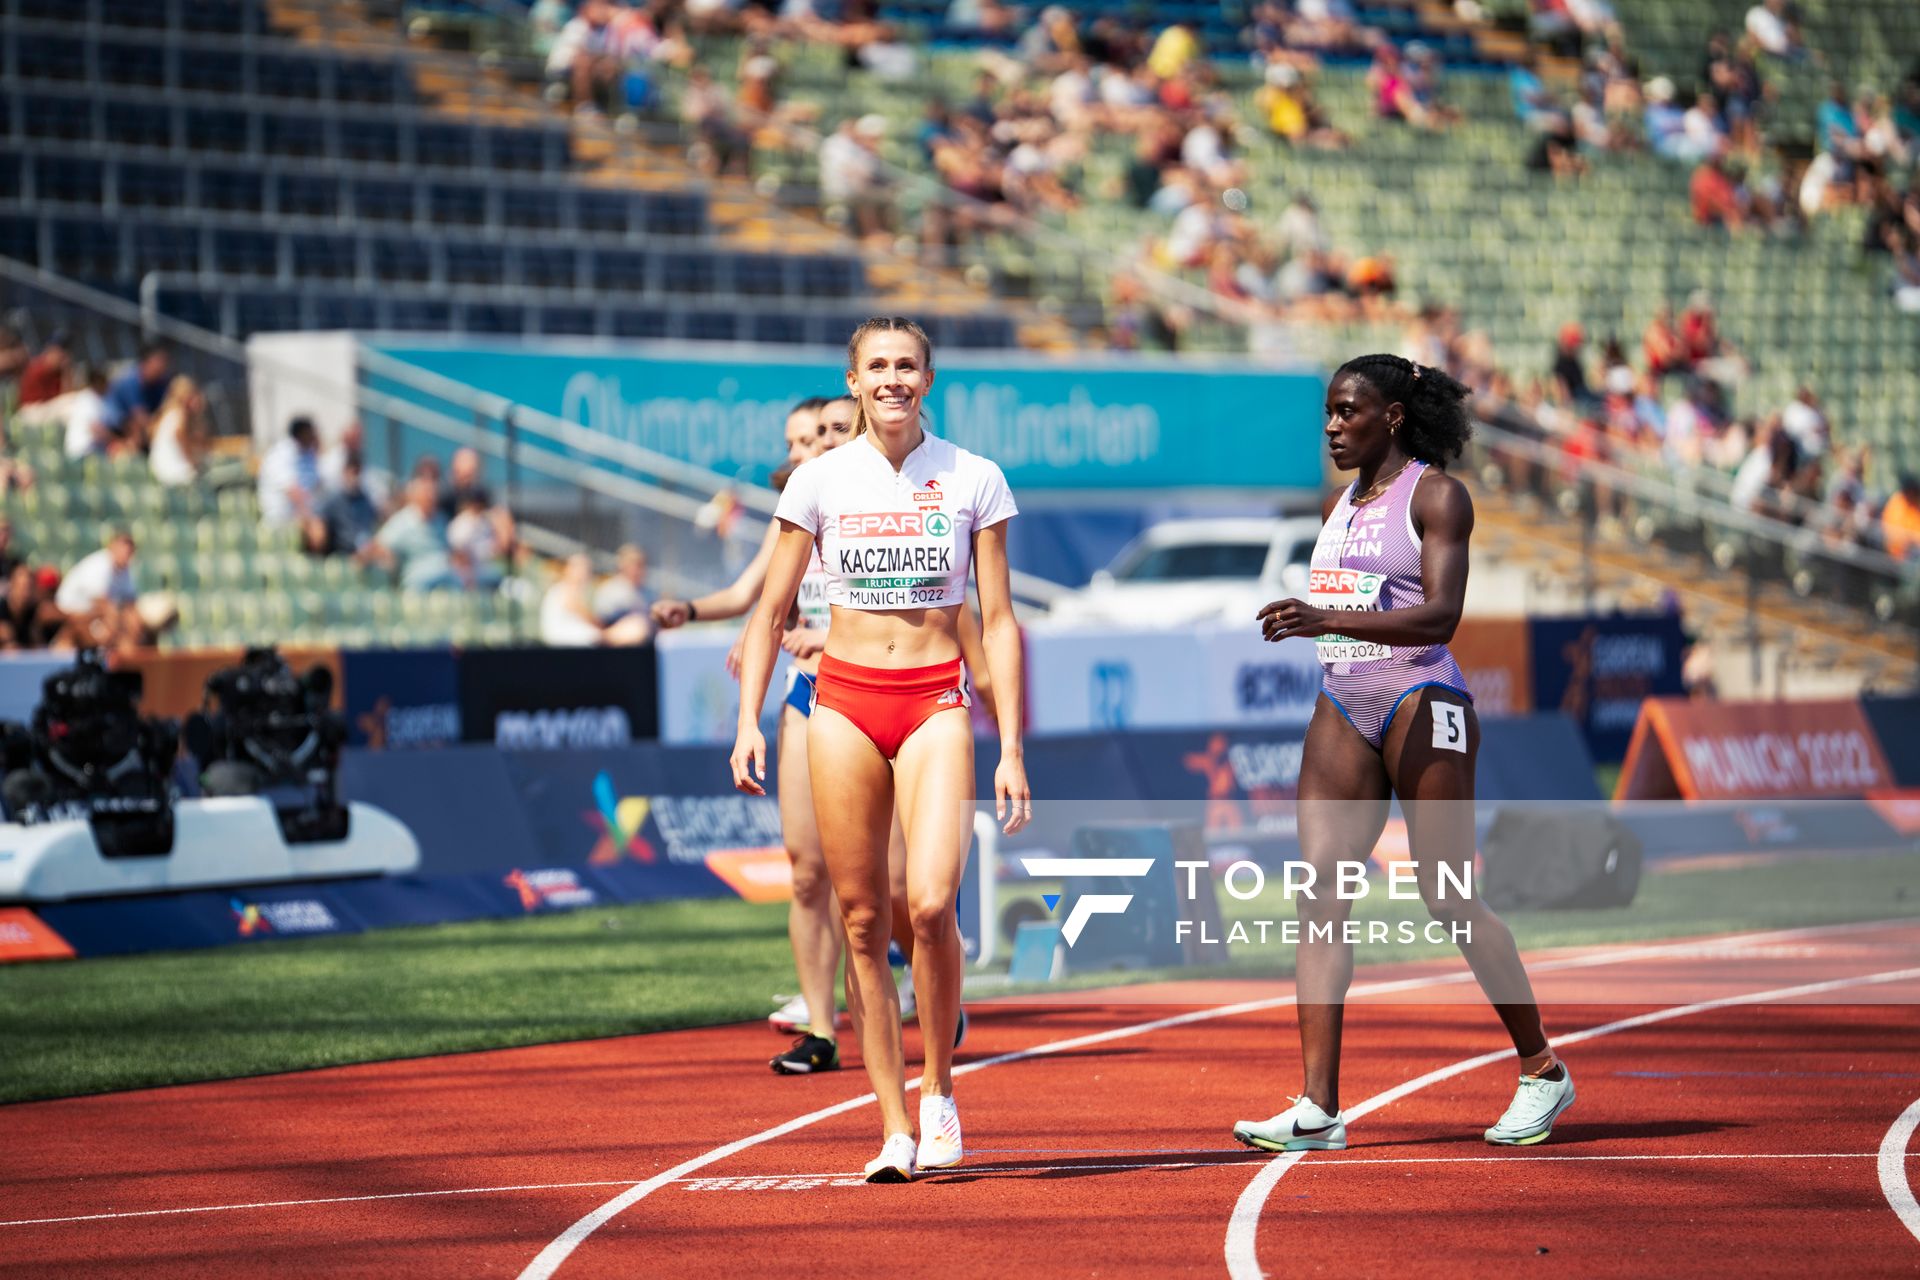 Natalia Kaczmarek (POL) im 400m Halbfinale am 16.08.2022 bei den Leichtathletik-Europameisterschaften in Muenchen